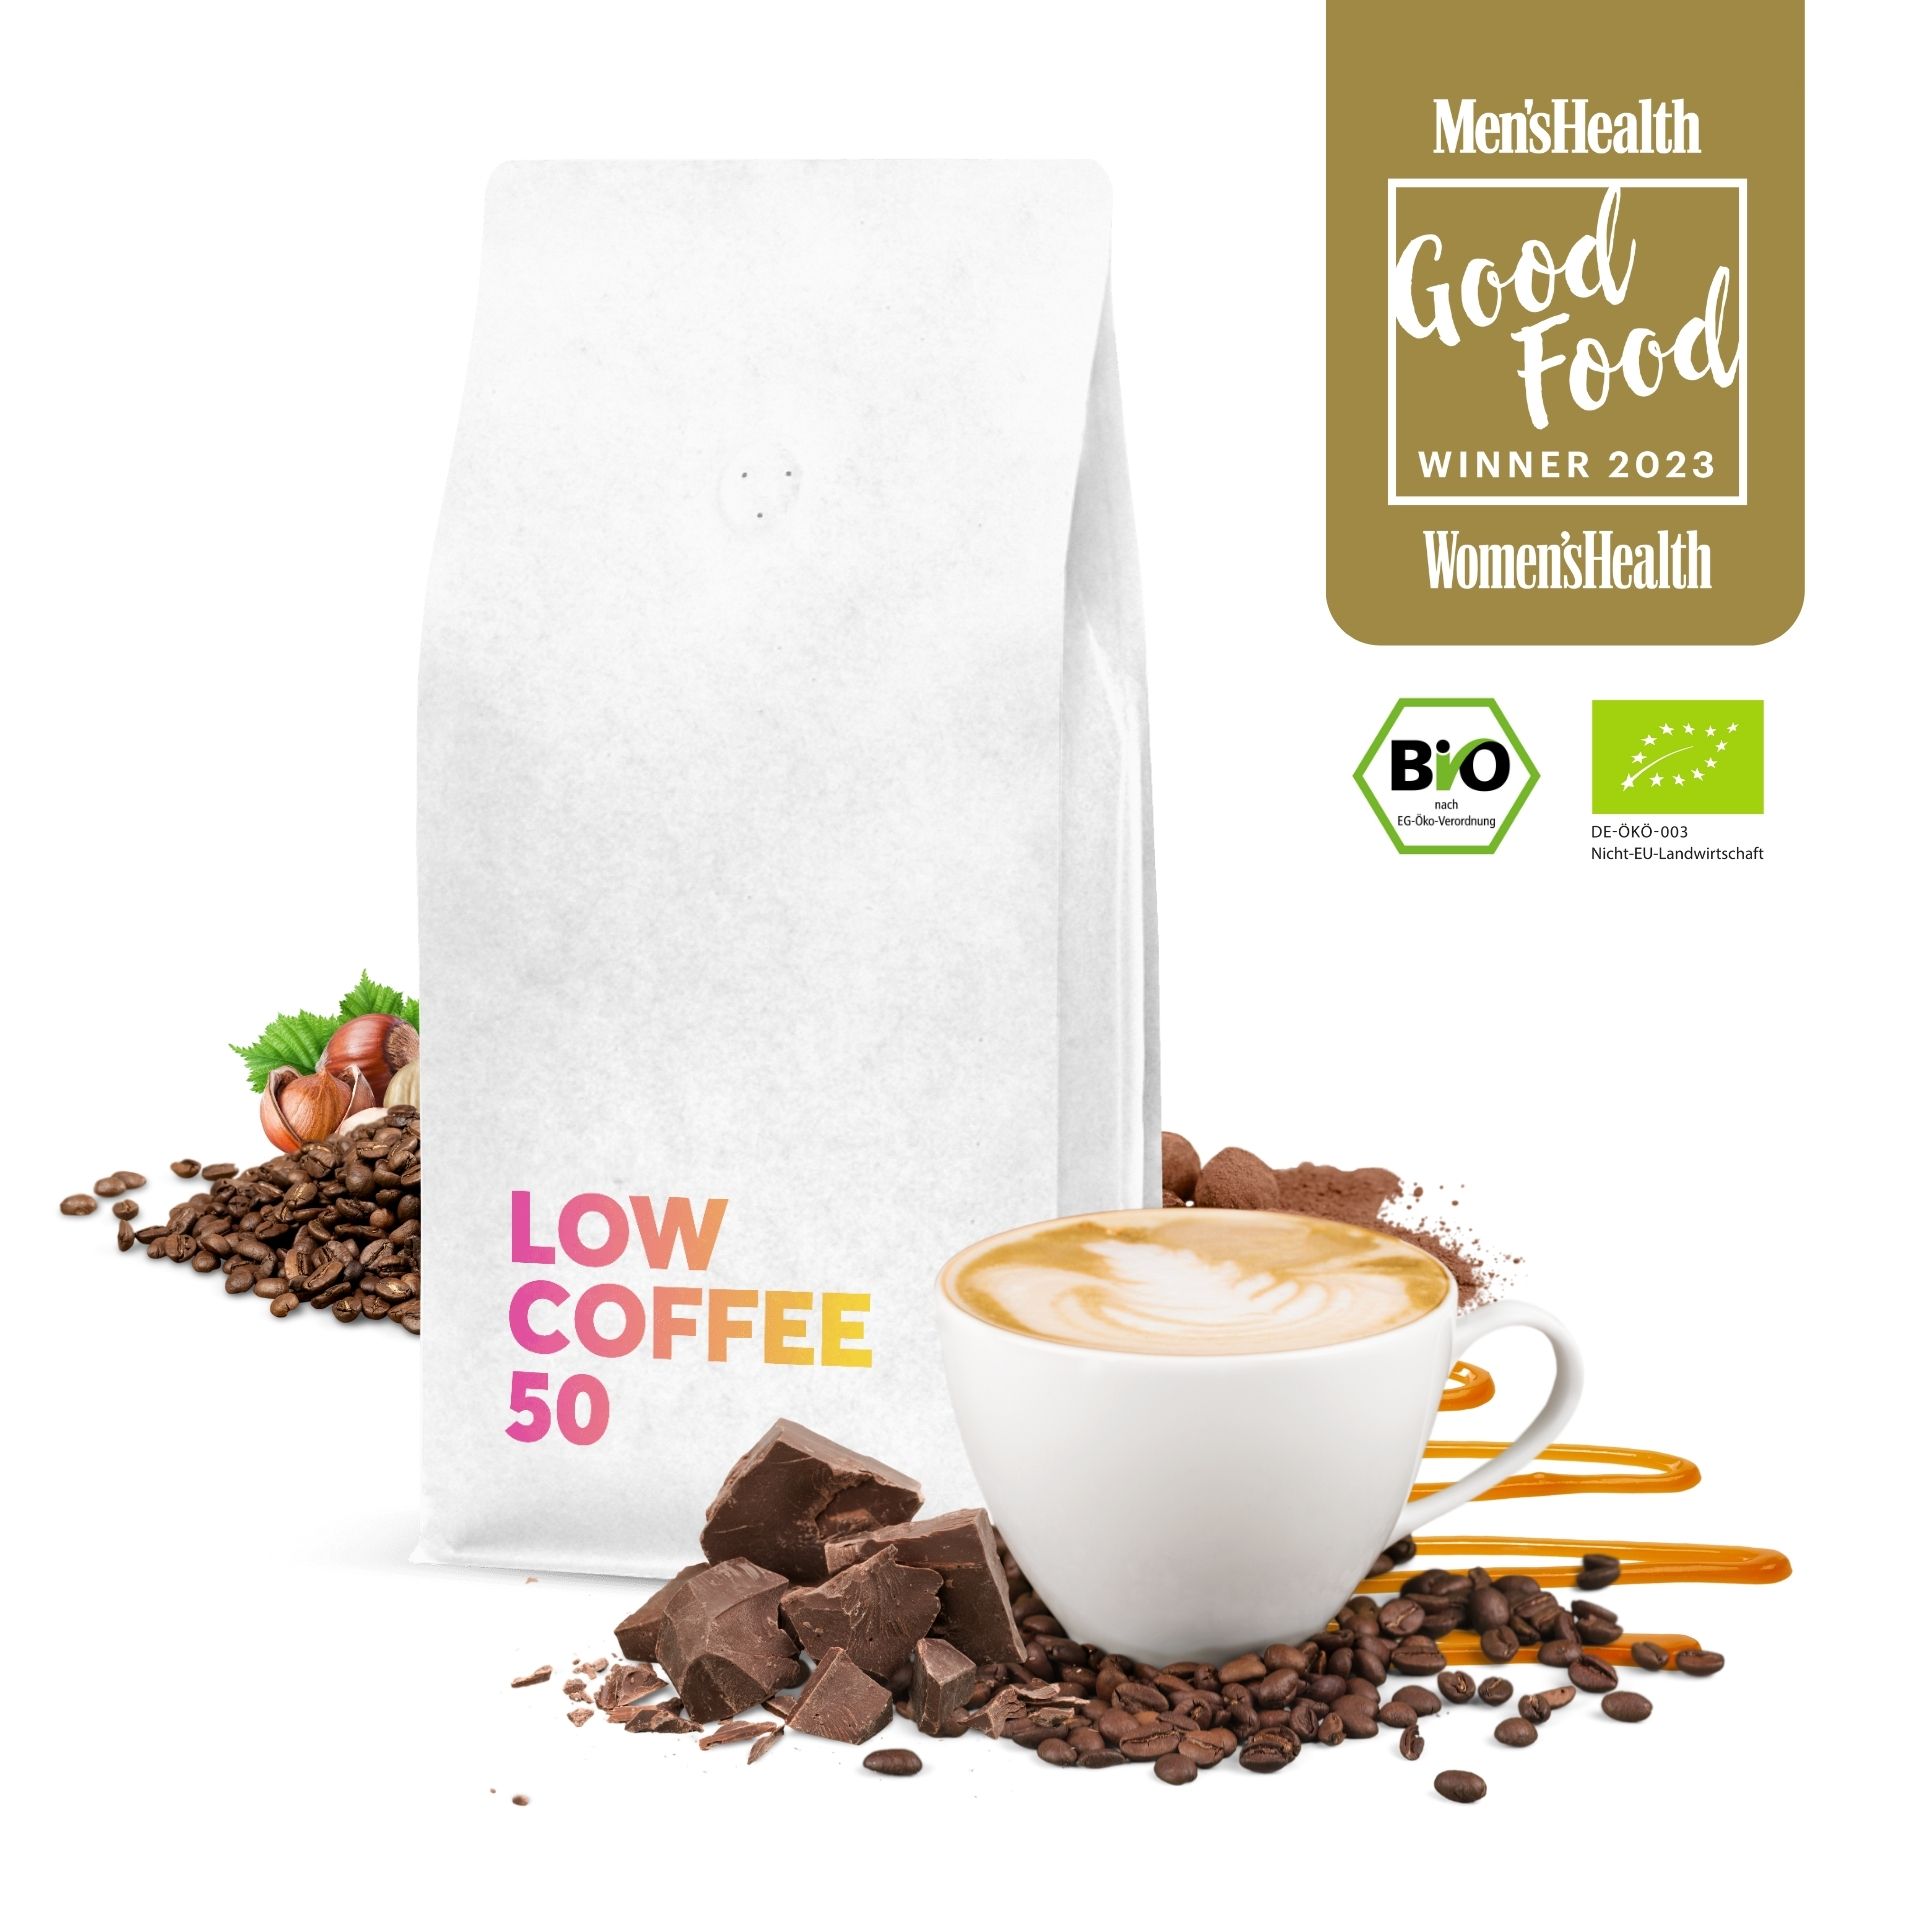 Low Coffee 50 ist Gewinner des Good Food Awards 2023 der Men's & Women's Health